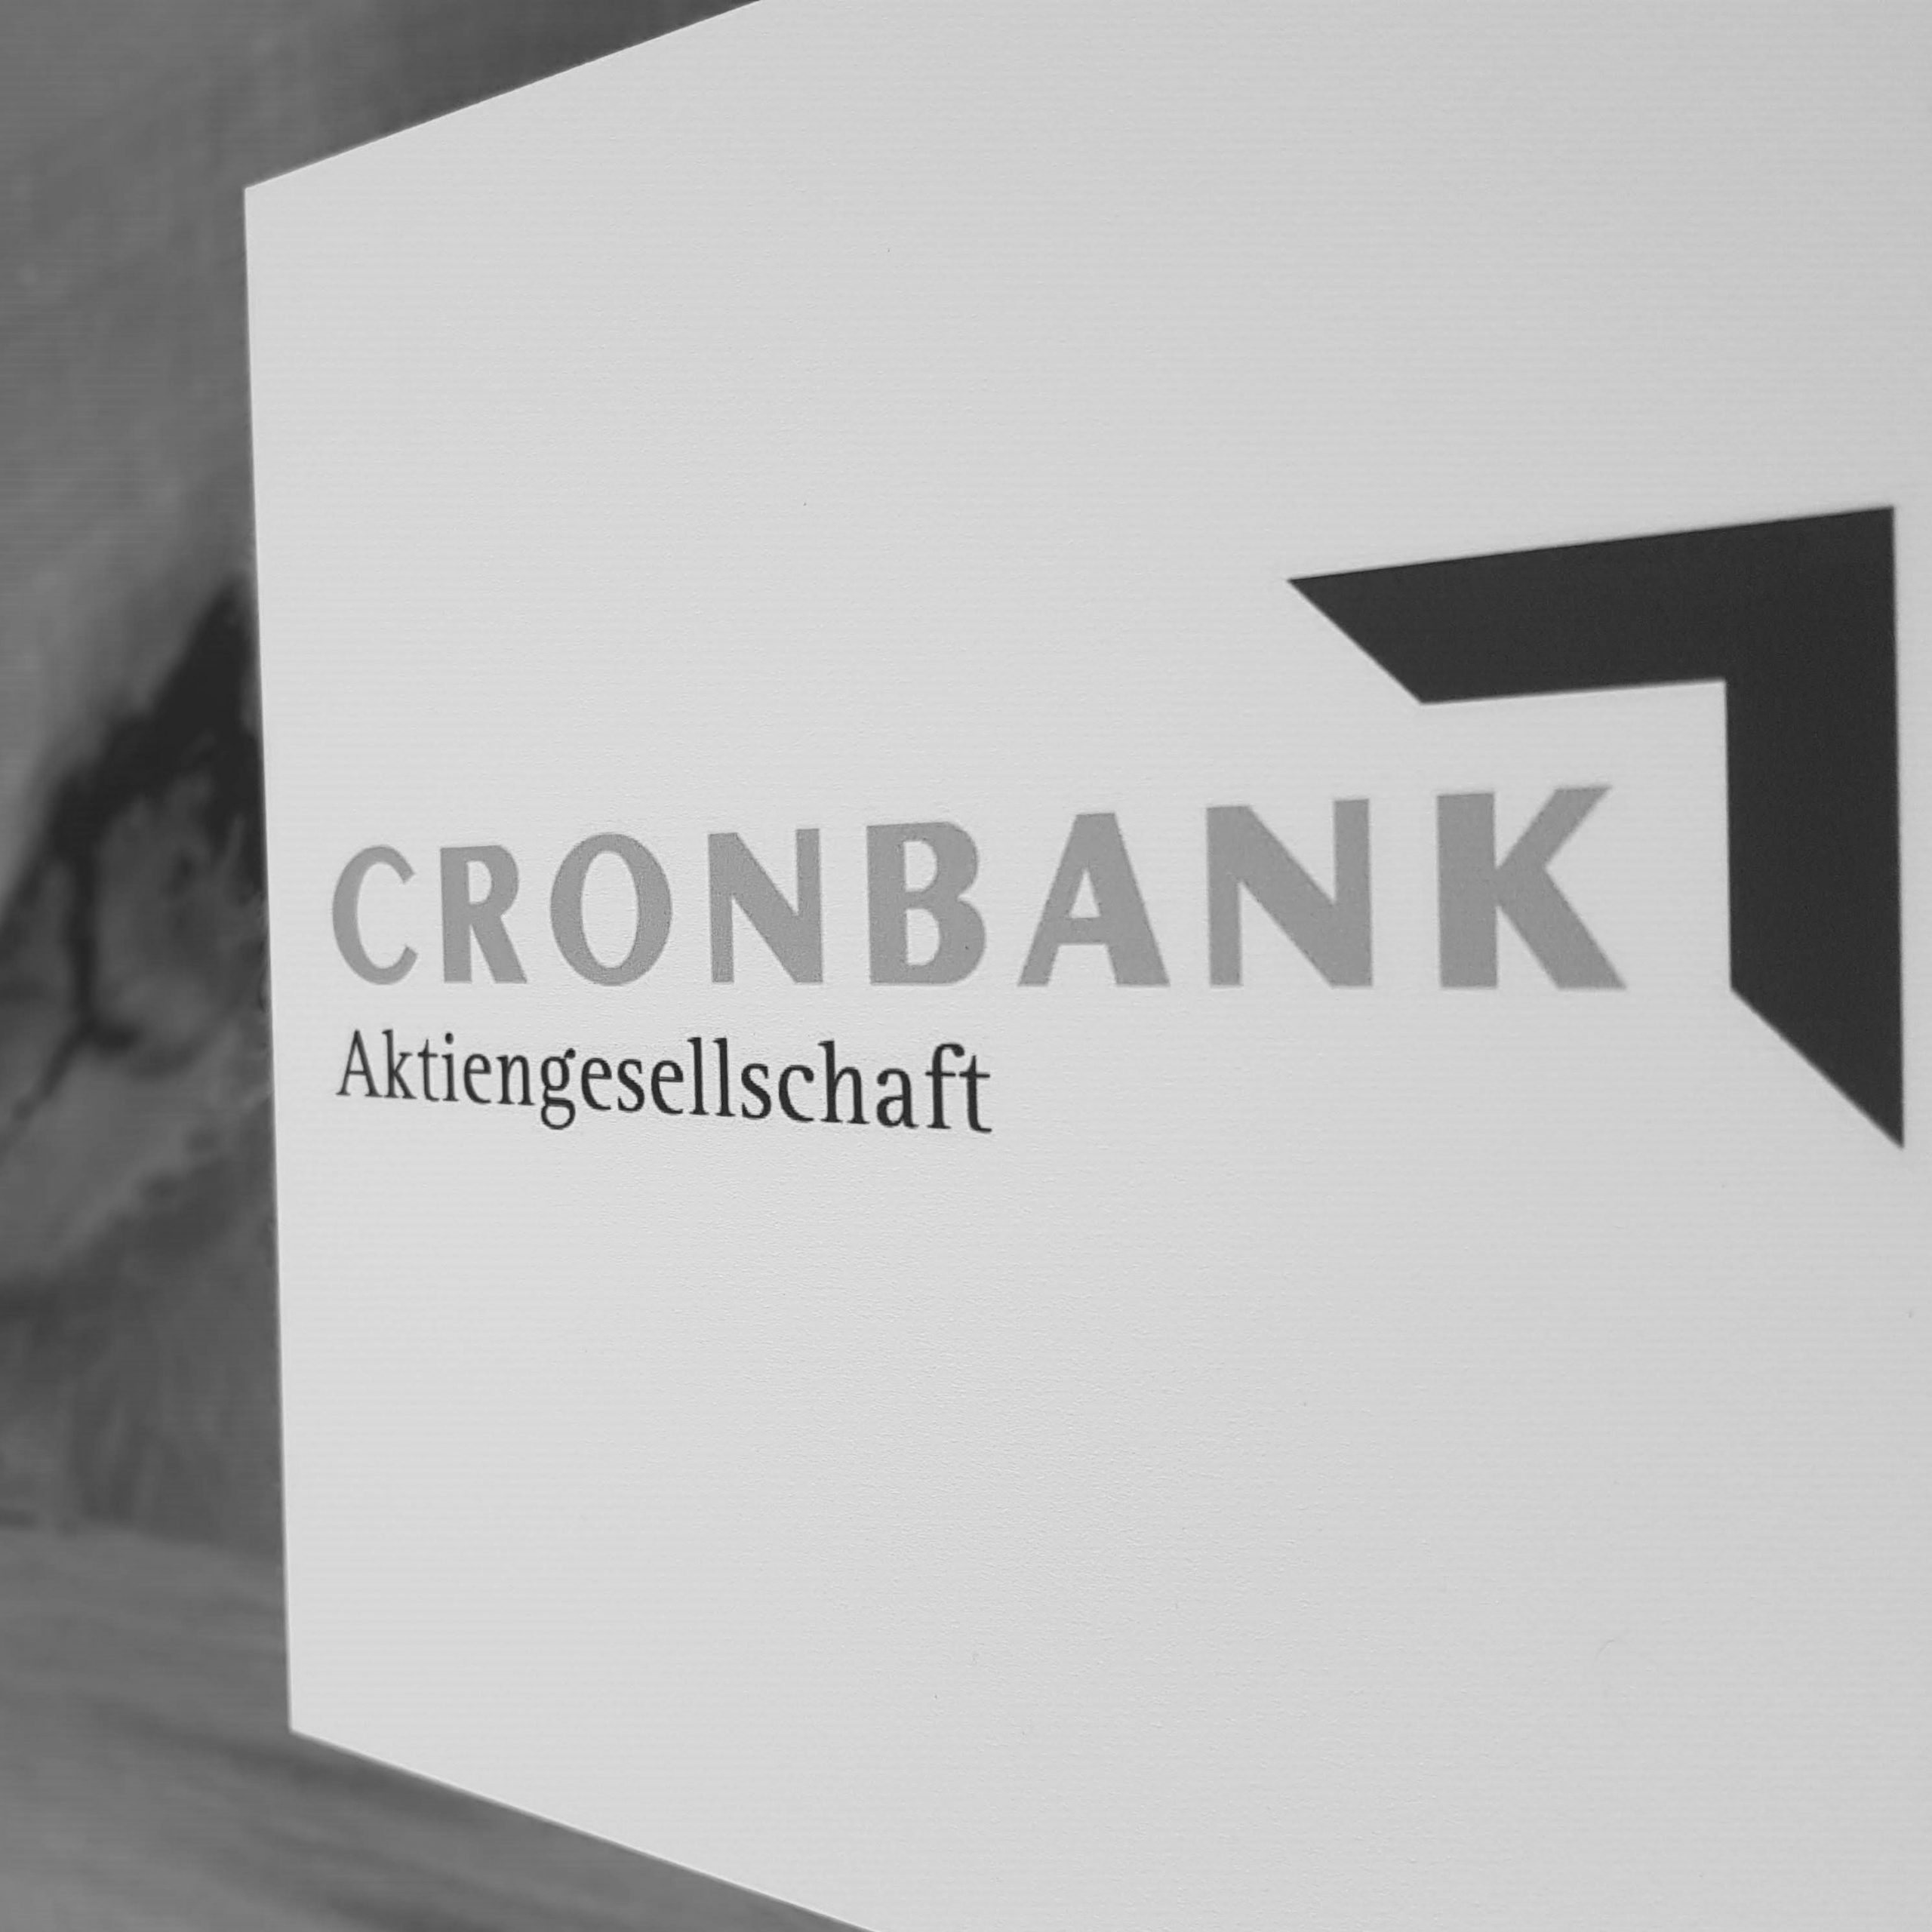 Abfotografiertes Logo CRONBANK Aktiengesellschaft Deutsche Kreditbank AG schwarzweiß